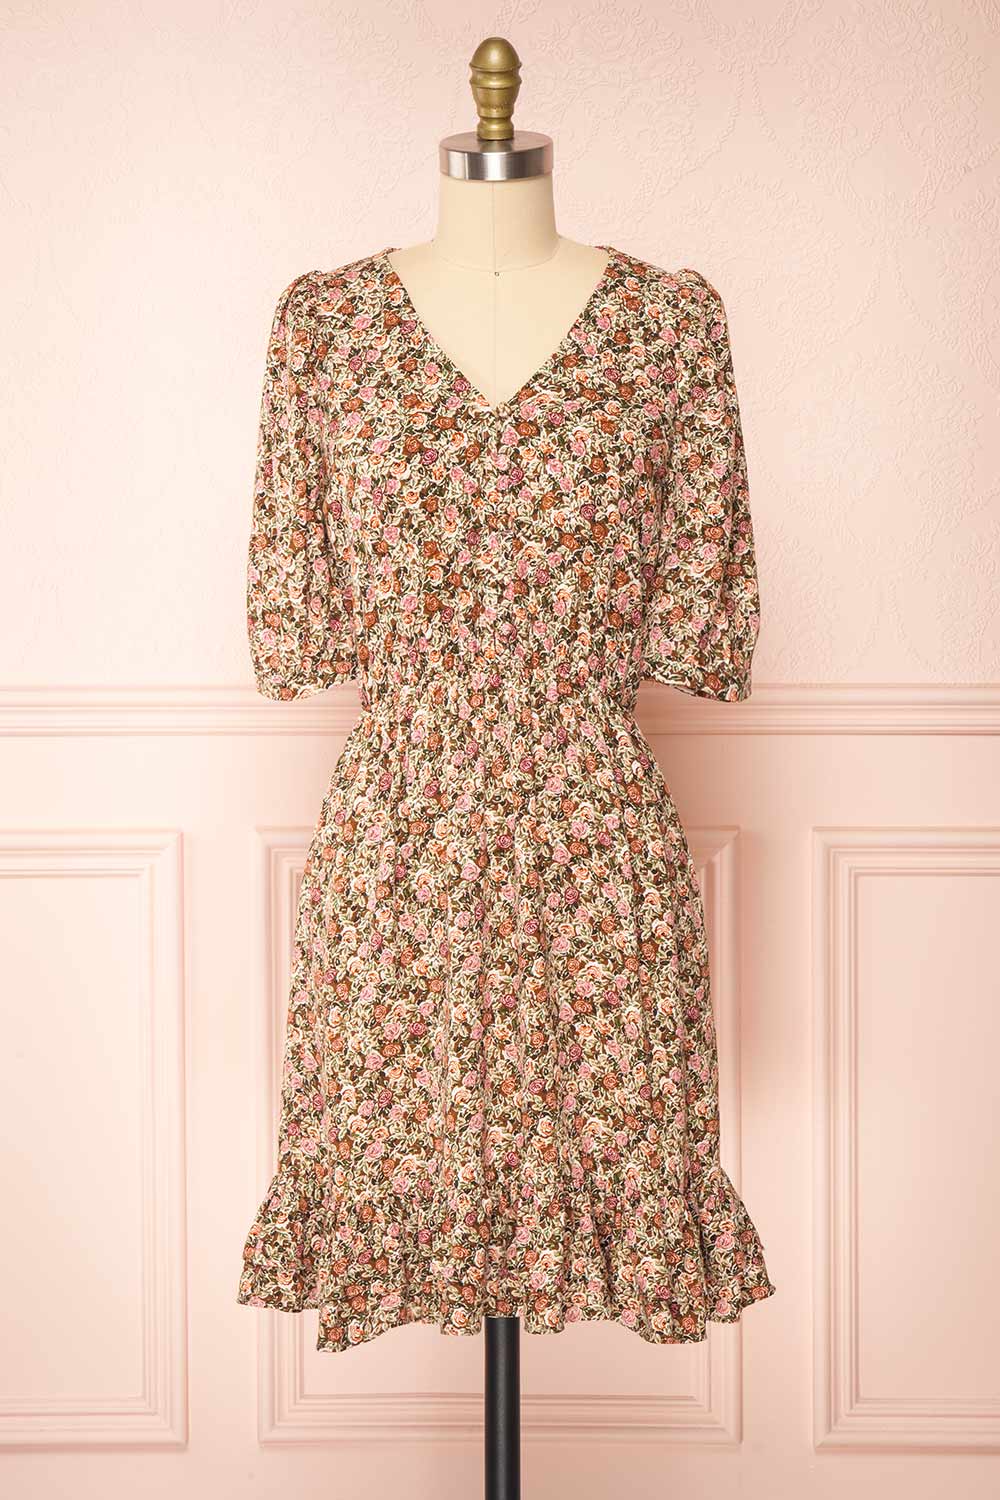 Vreni Floral V Neck Short Dress w/ Elastic Waist | Boutique 1861 front view 